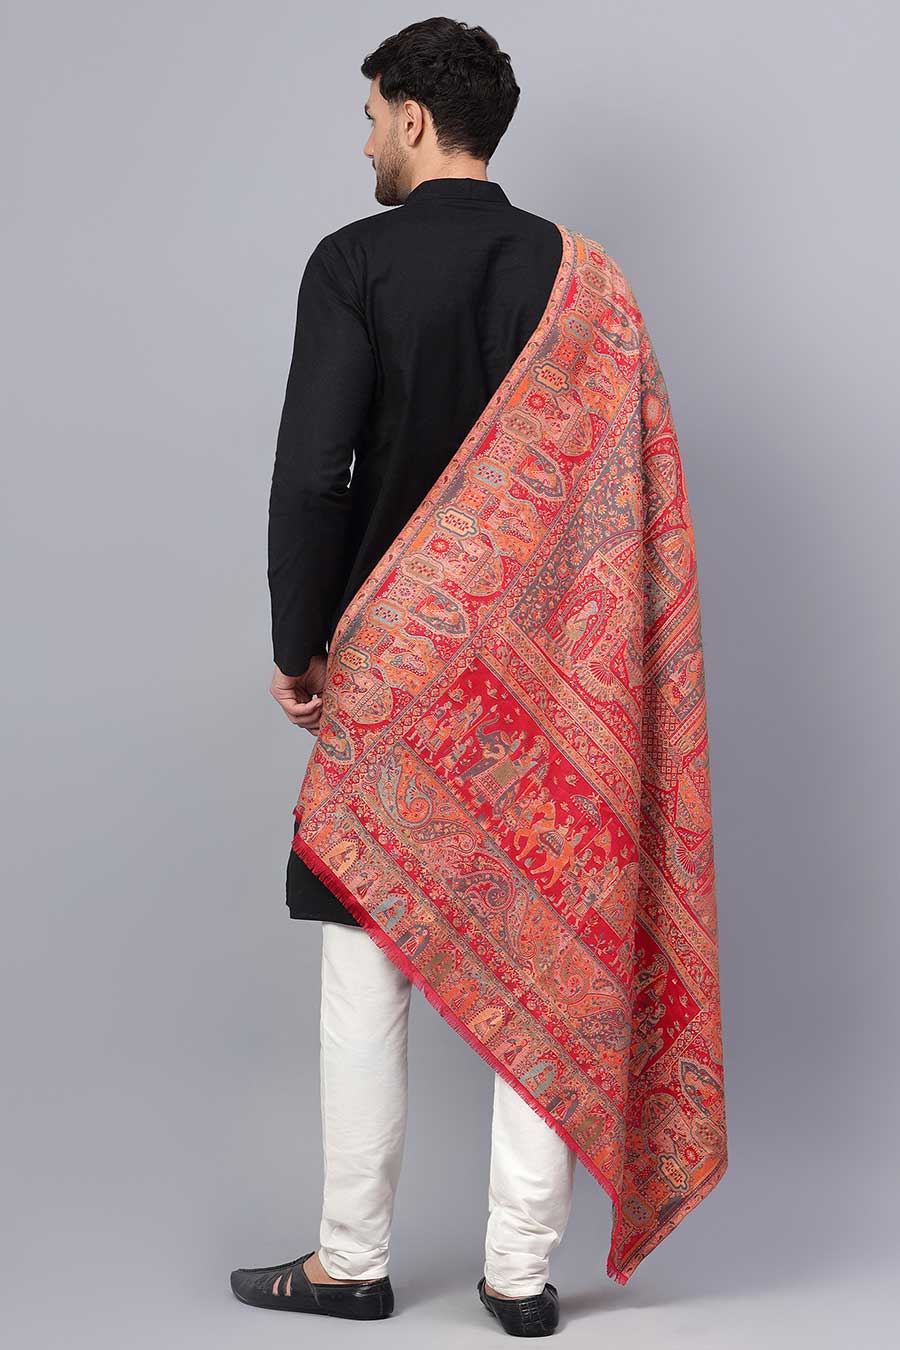 Red Mughal Darbar Fine Wool Shawl